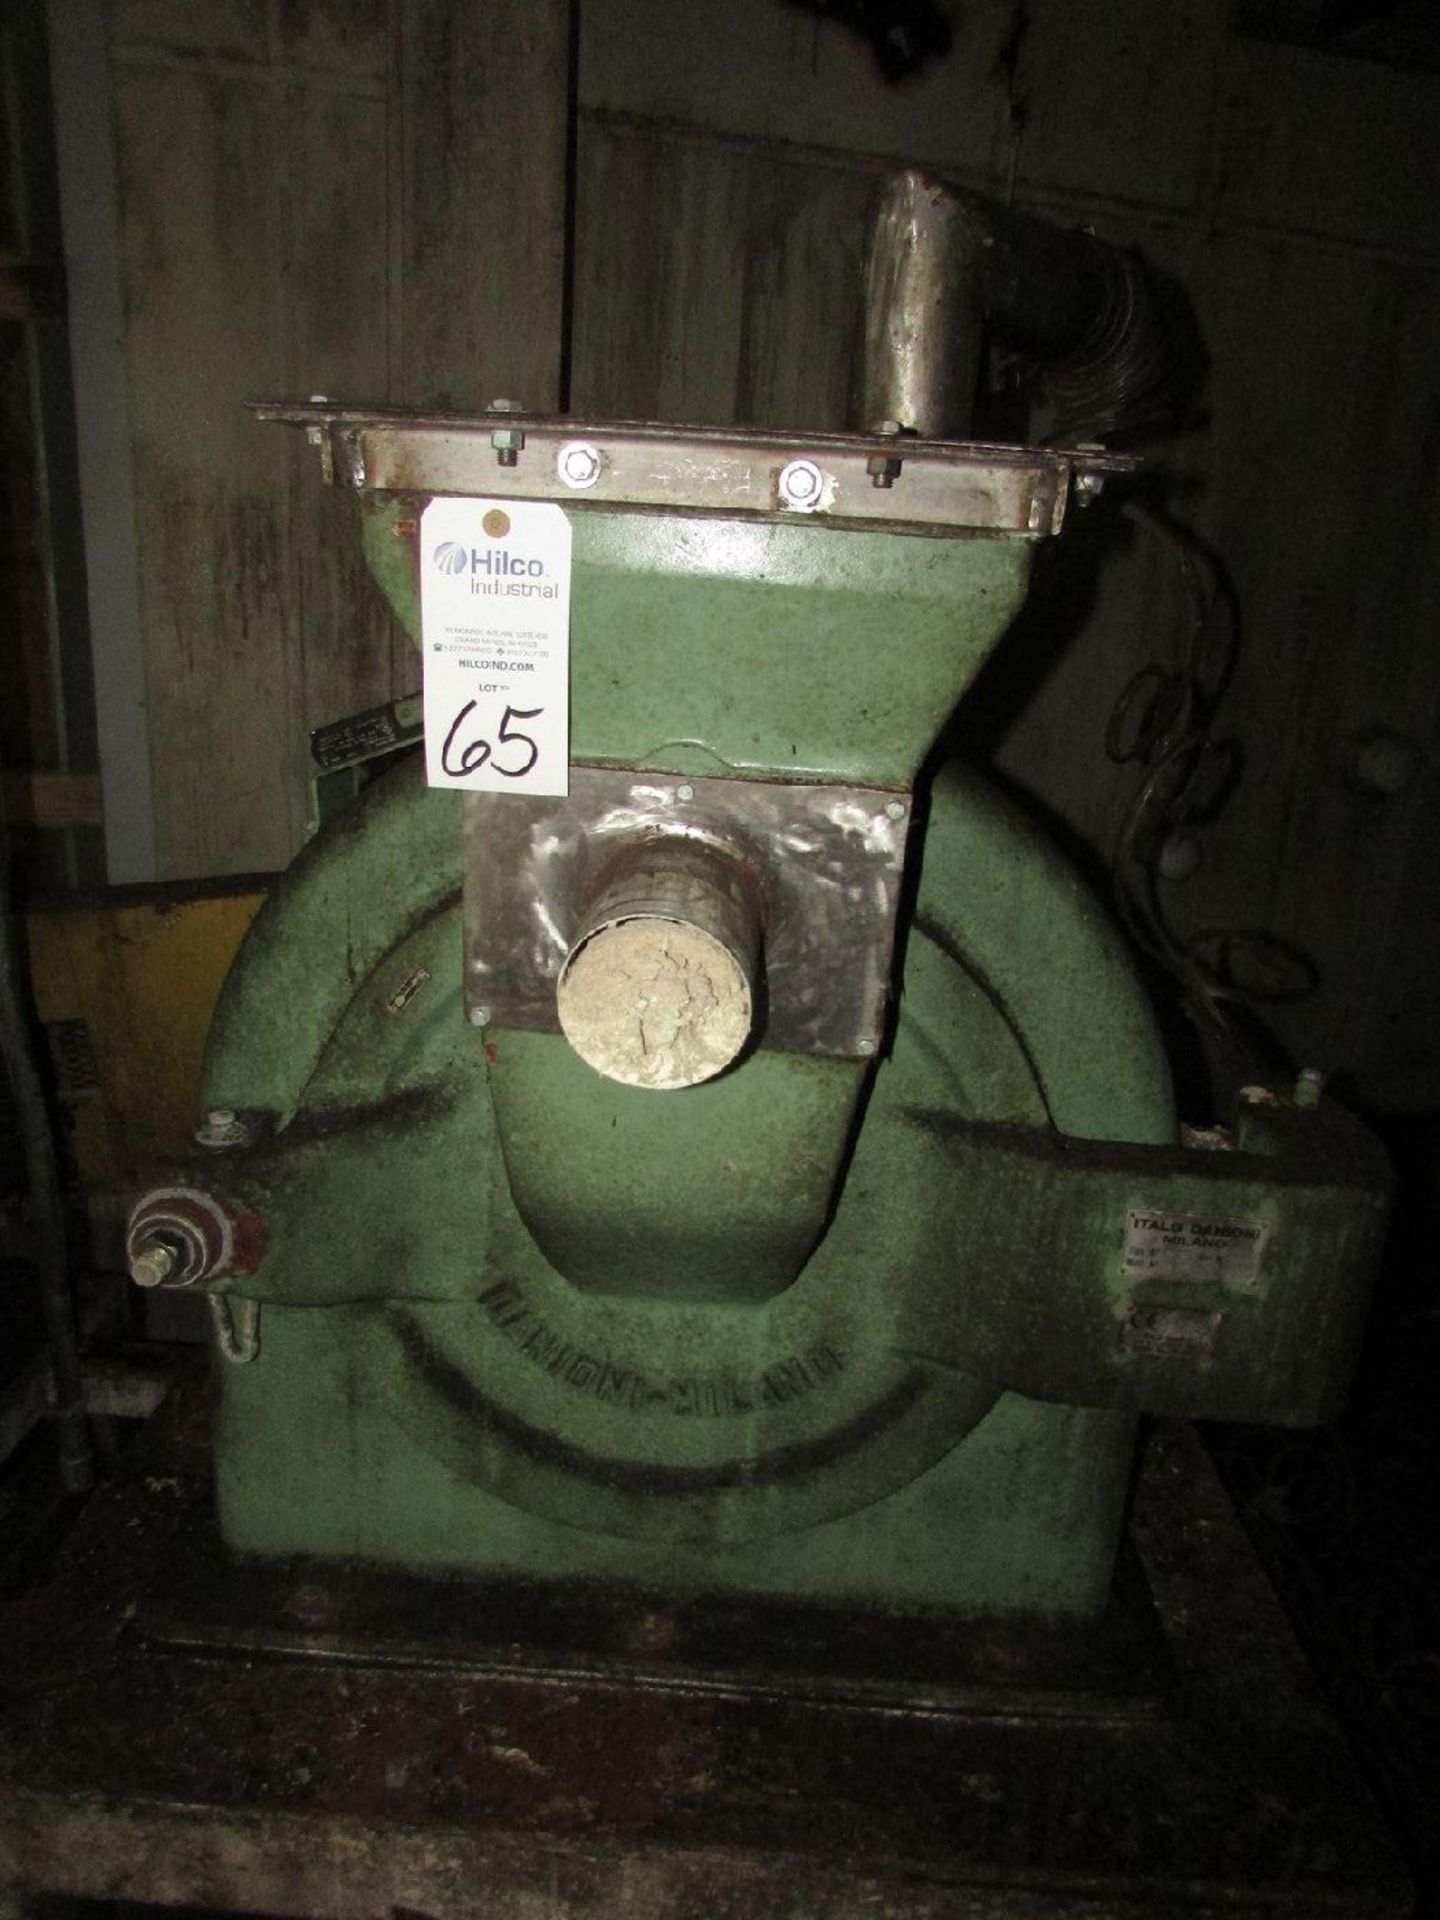 Italo Danioni-Milano Model 524 Pin Mill (Processing) - Image 2 of 6